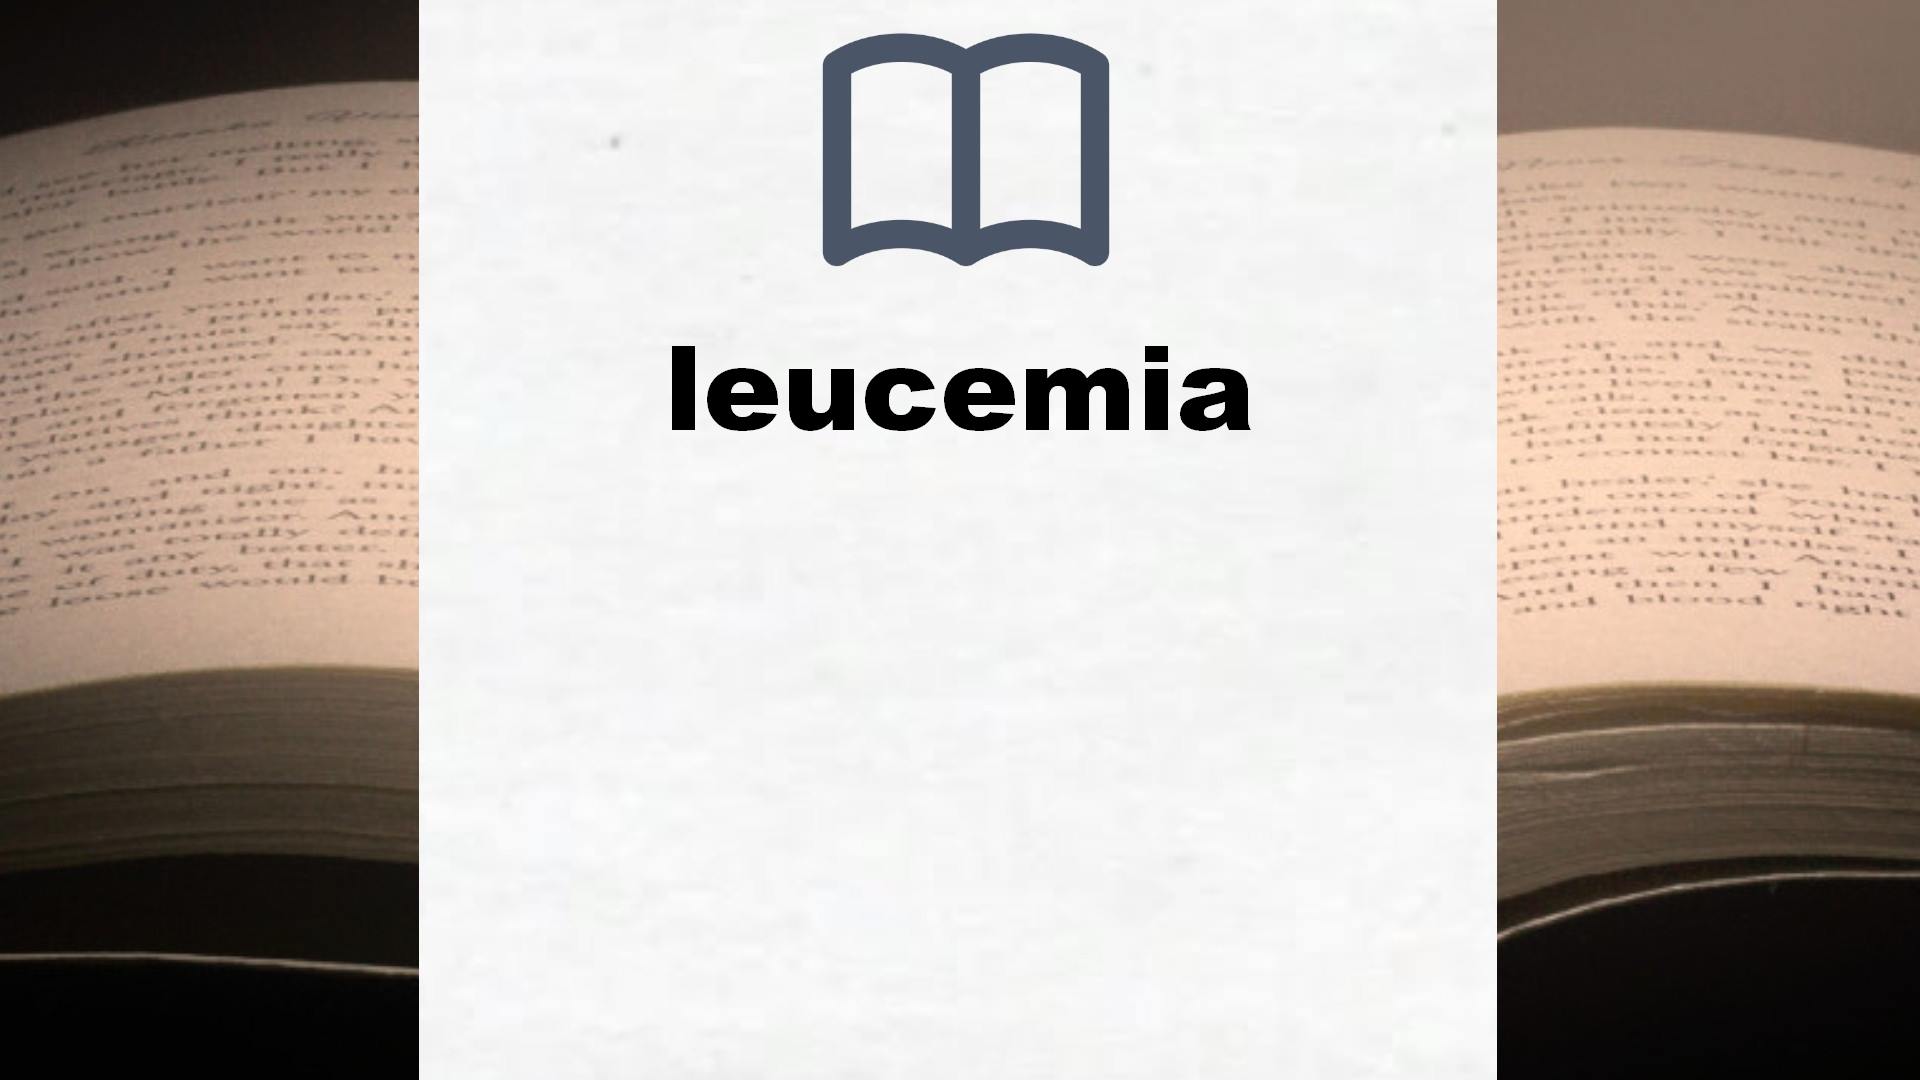 Libros sobre leucemia